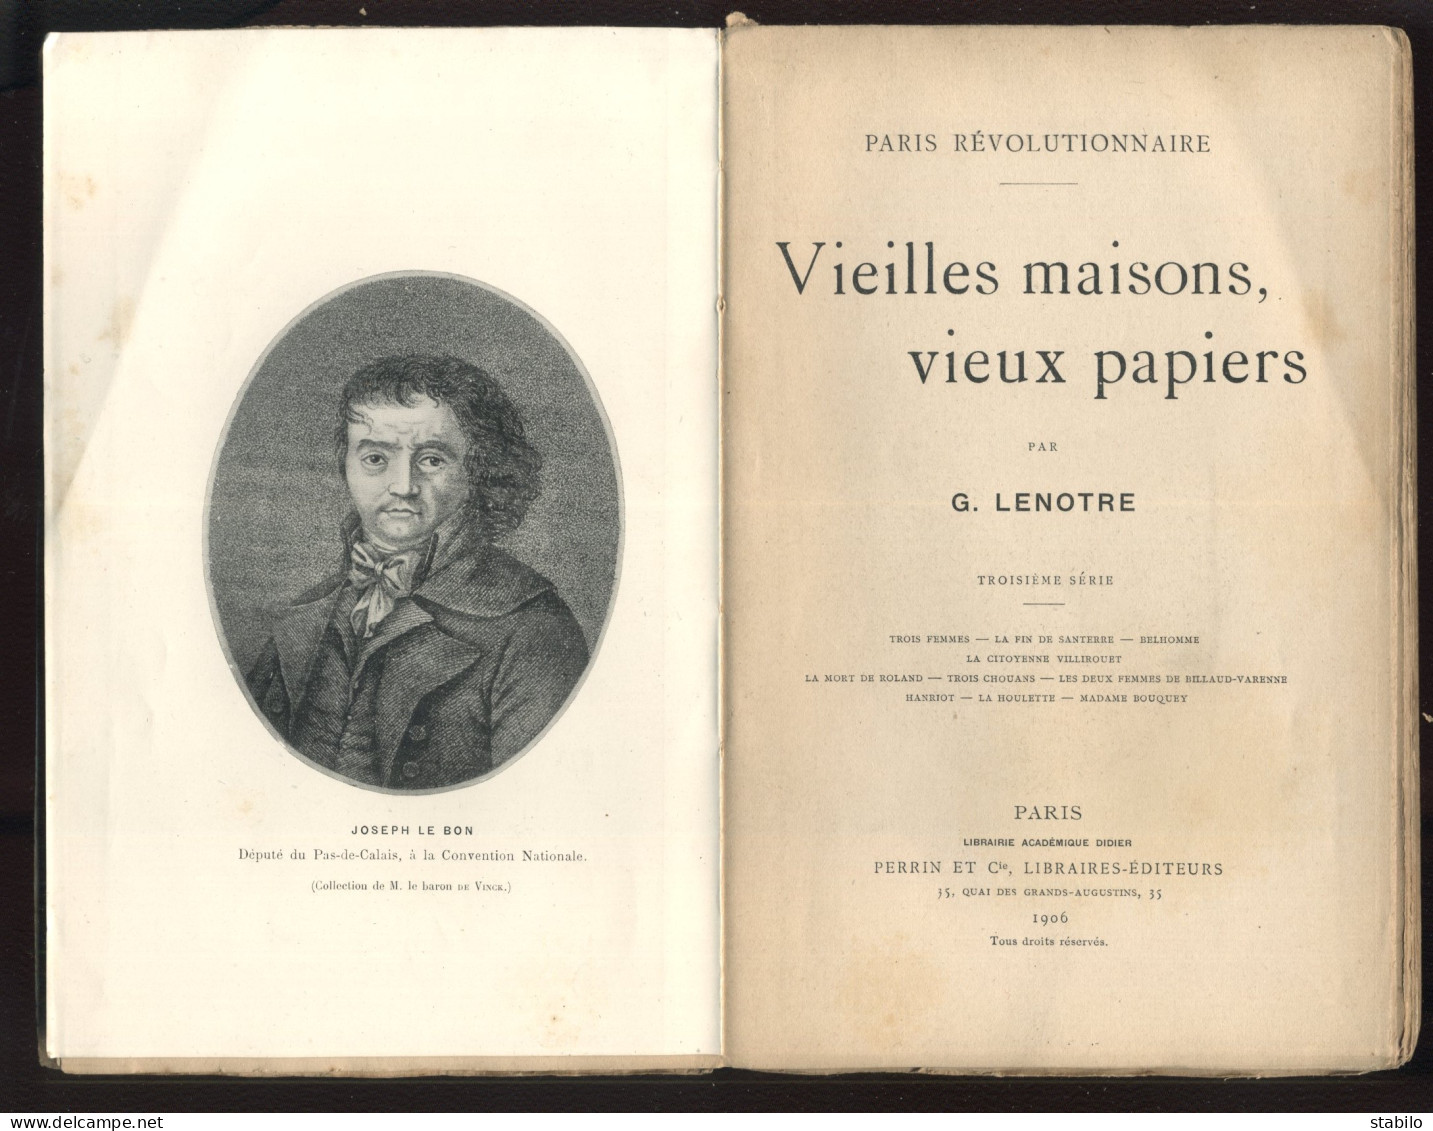 PARIS REVOLUTIONNAIRE - VIEILLES MAISONS, VIEUX PAPIERS PAR G. LENOTRE - EDITEUR PERRIN 3EME SERIE 1906 - Paris